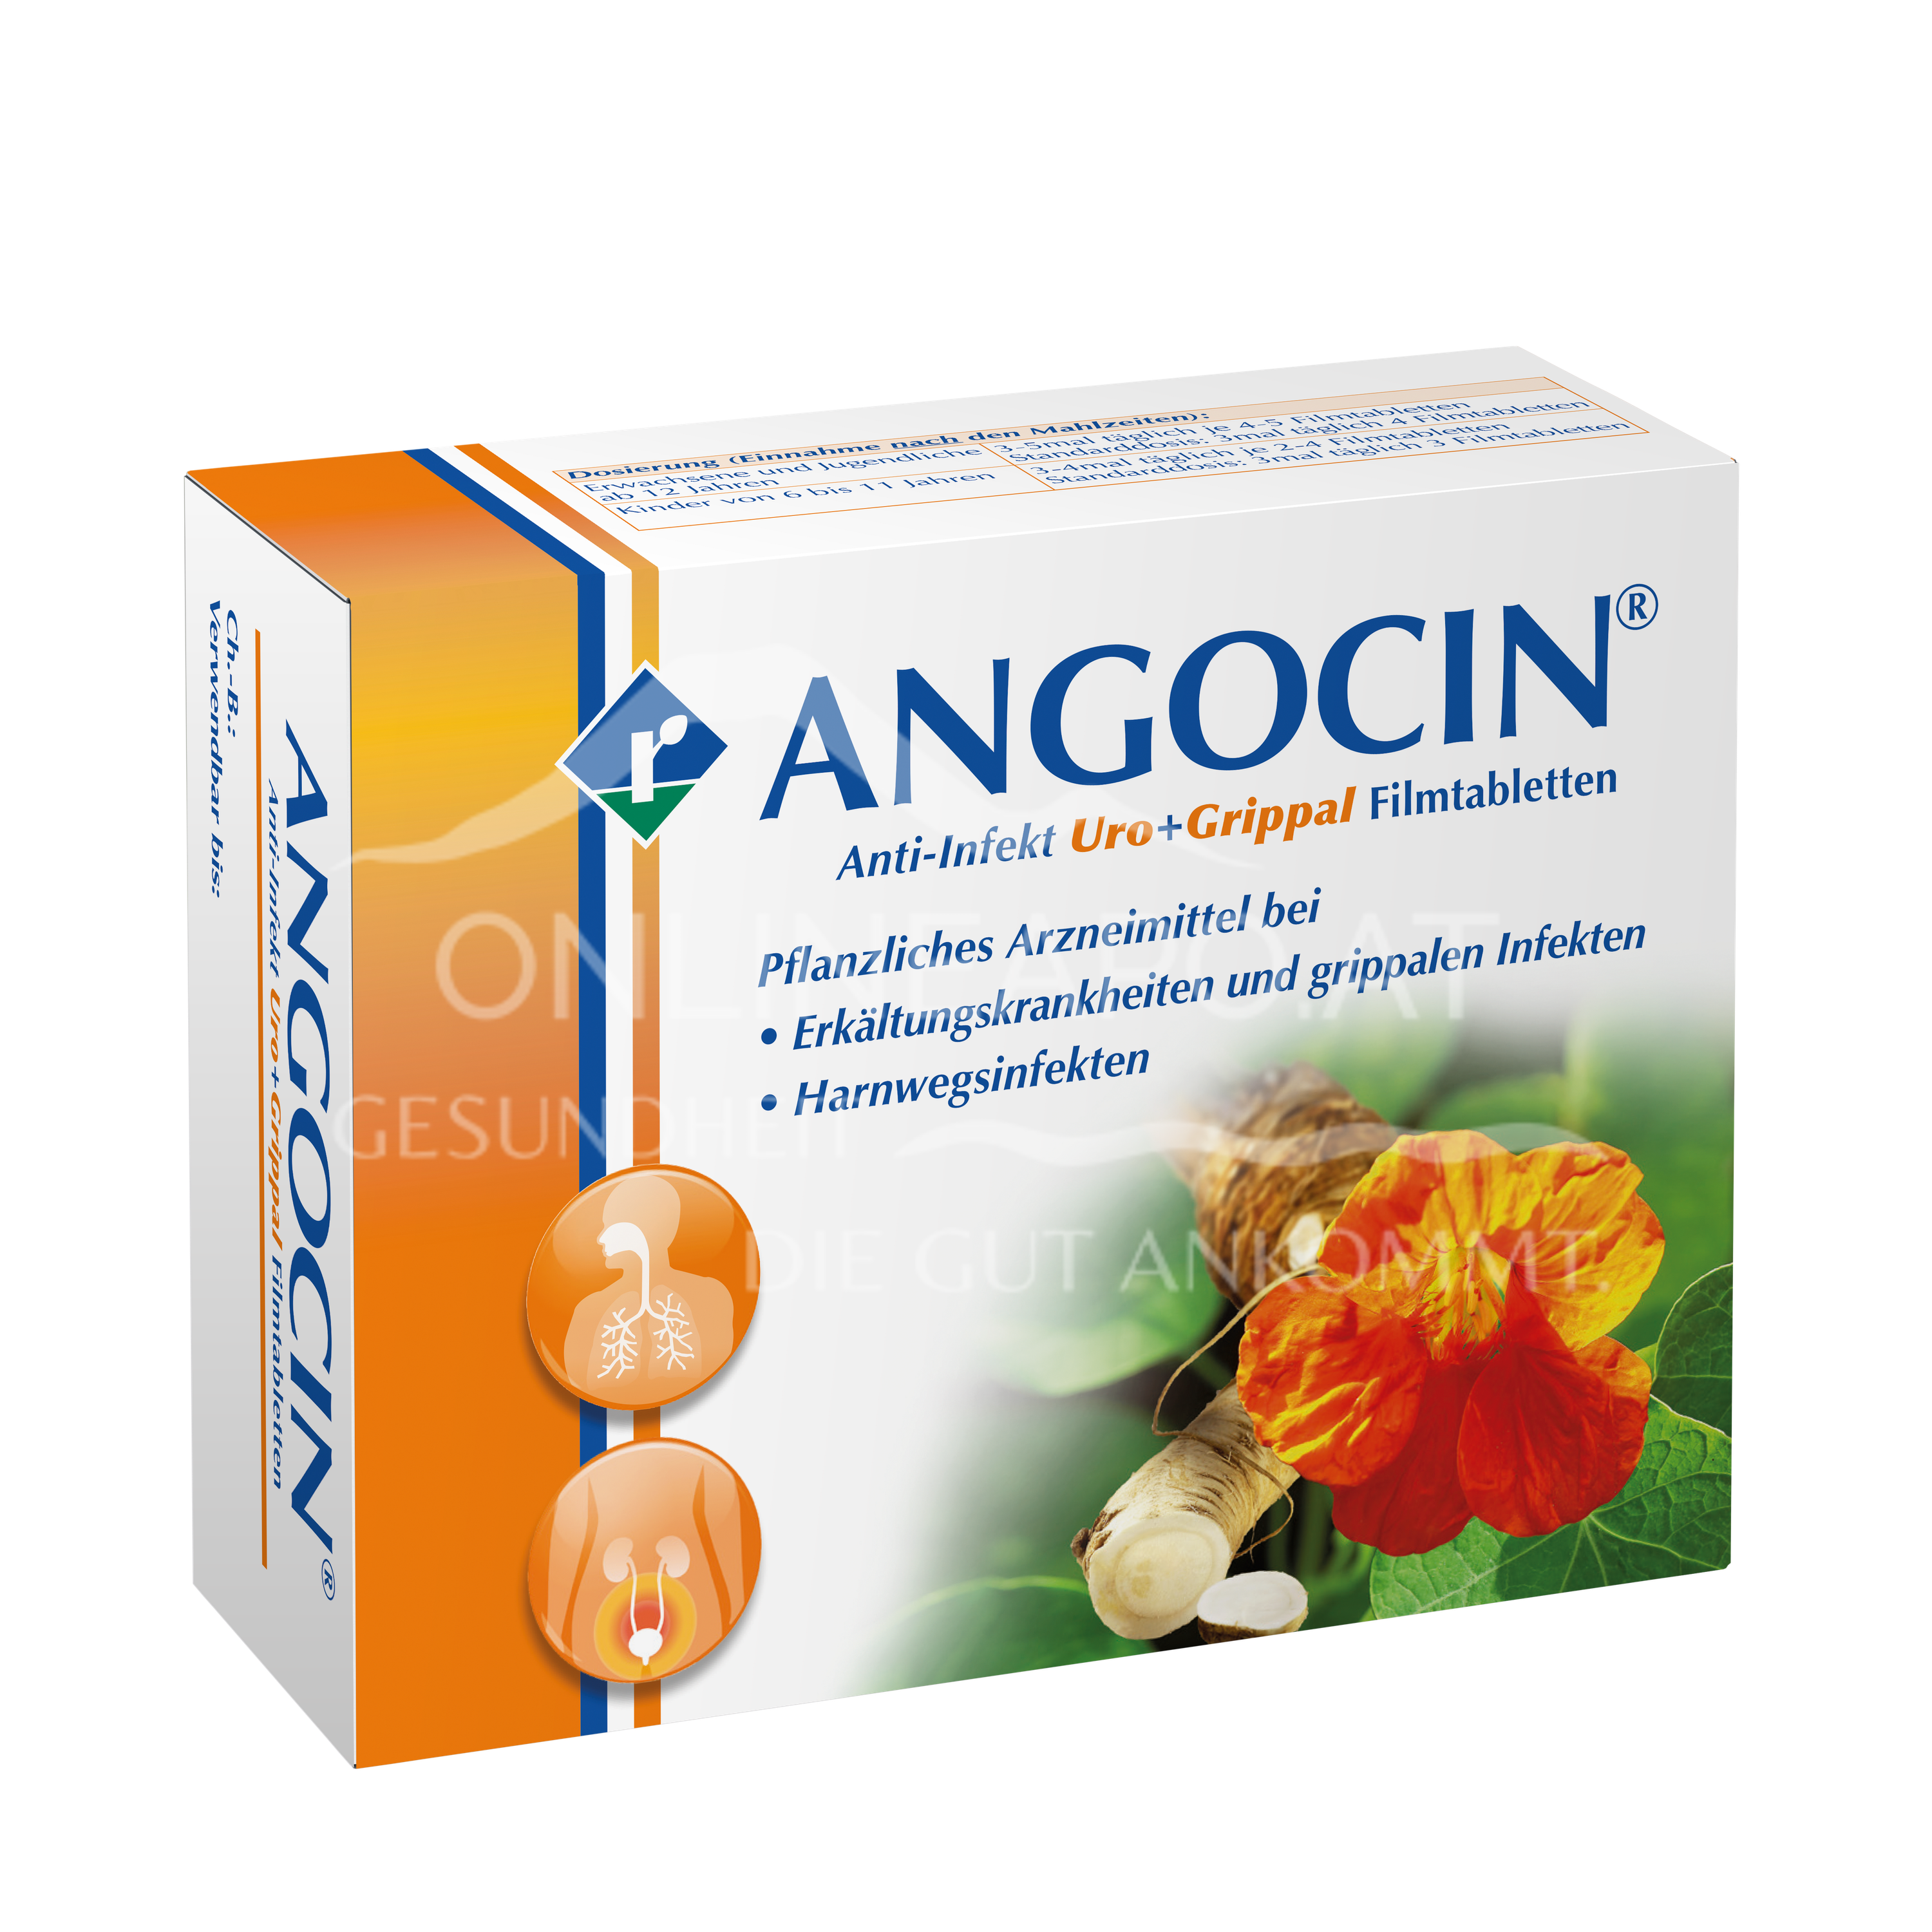 ANGOCIN® Anti-Infekt Uro+Grippal Filmtabletten